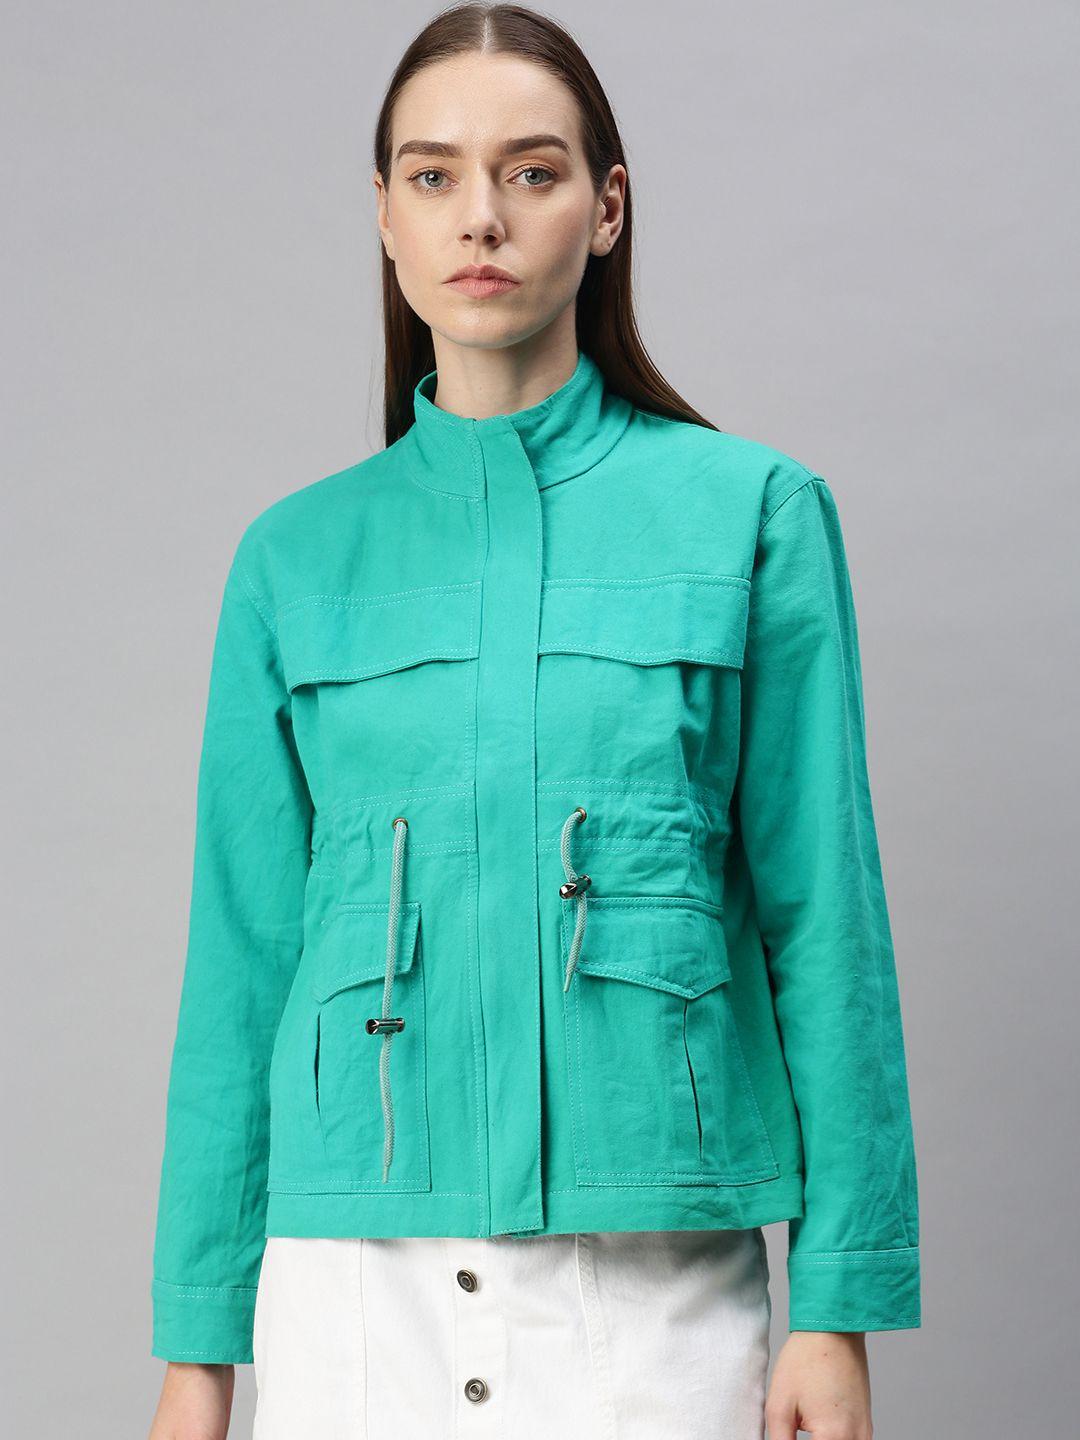 voxati women sea green denim jacket